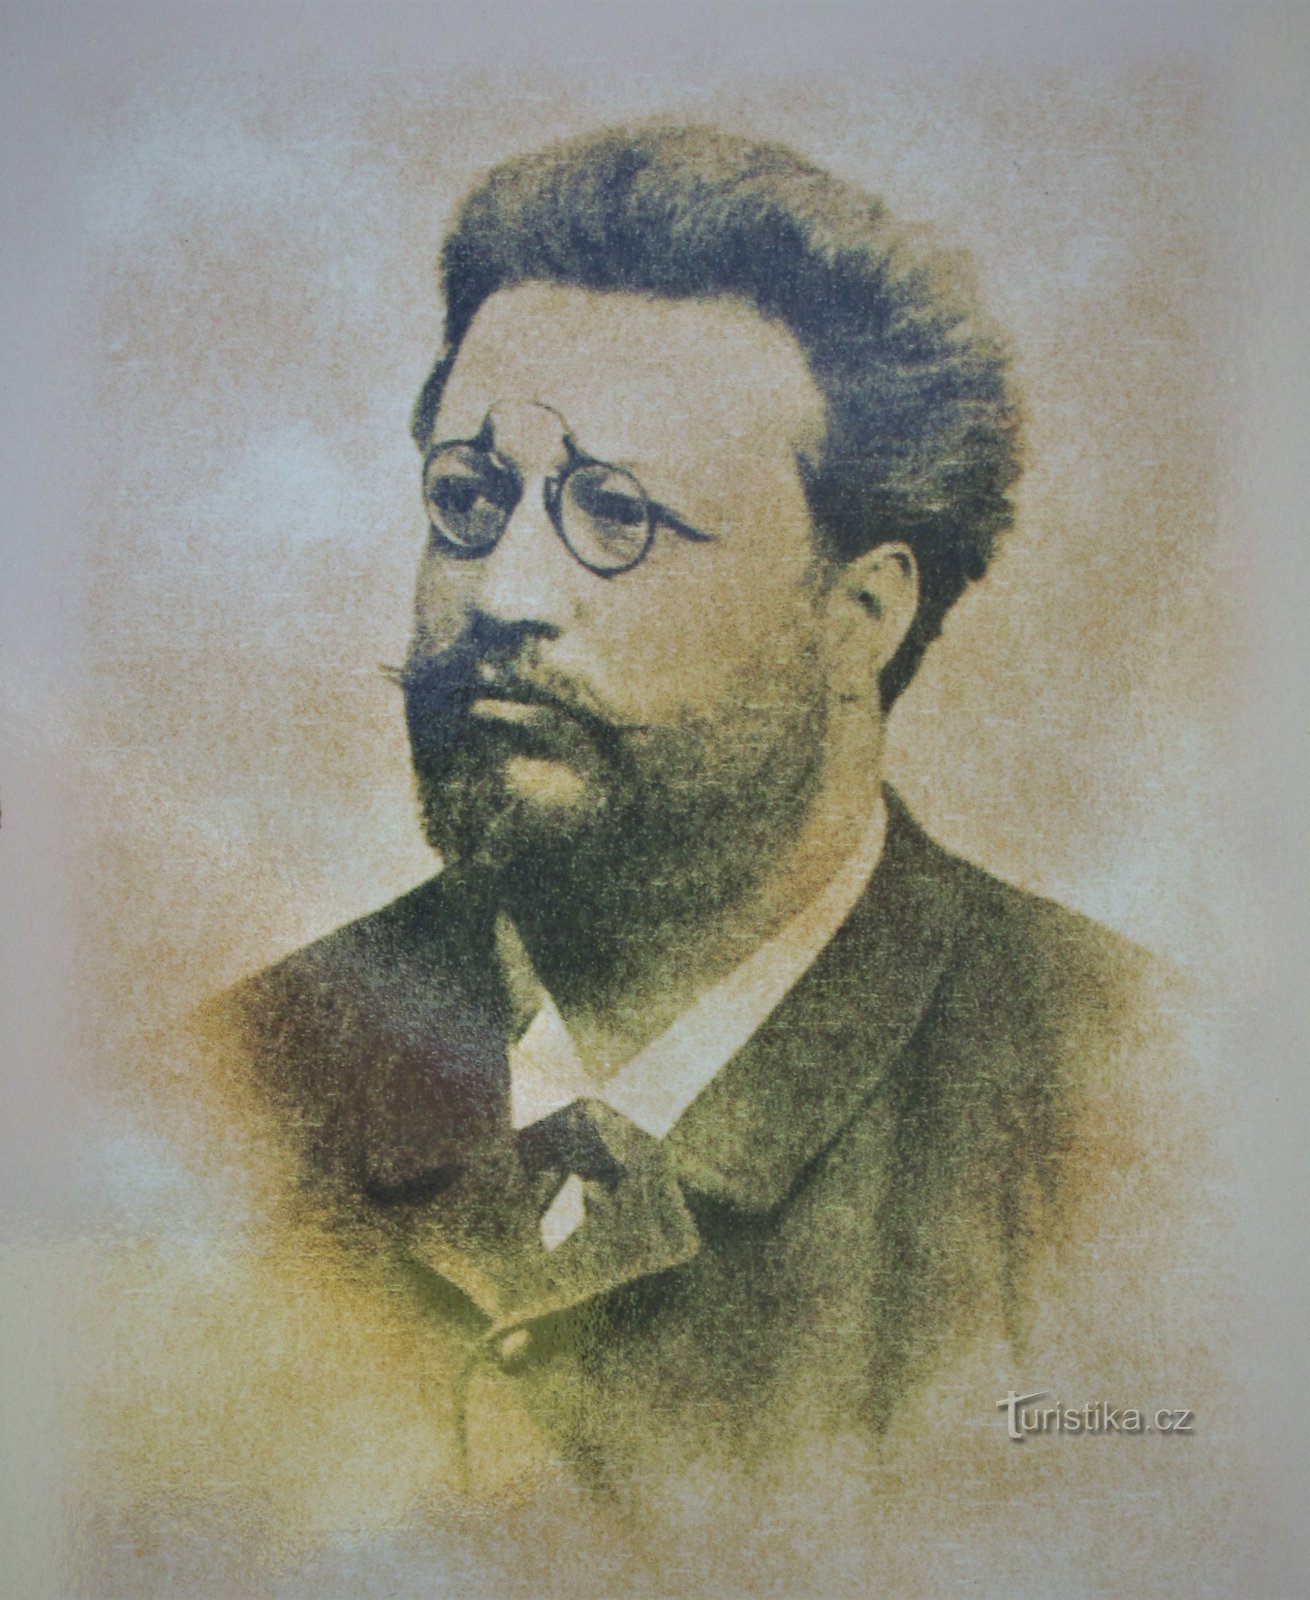 Retrato de Ludvík Masaryk (tomado del panel informativo)